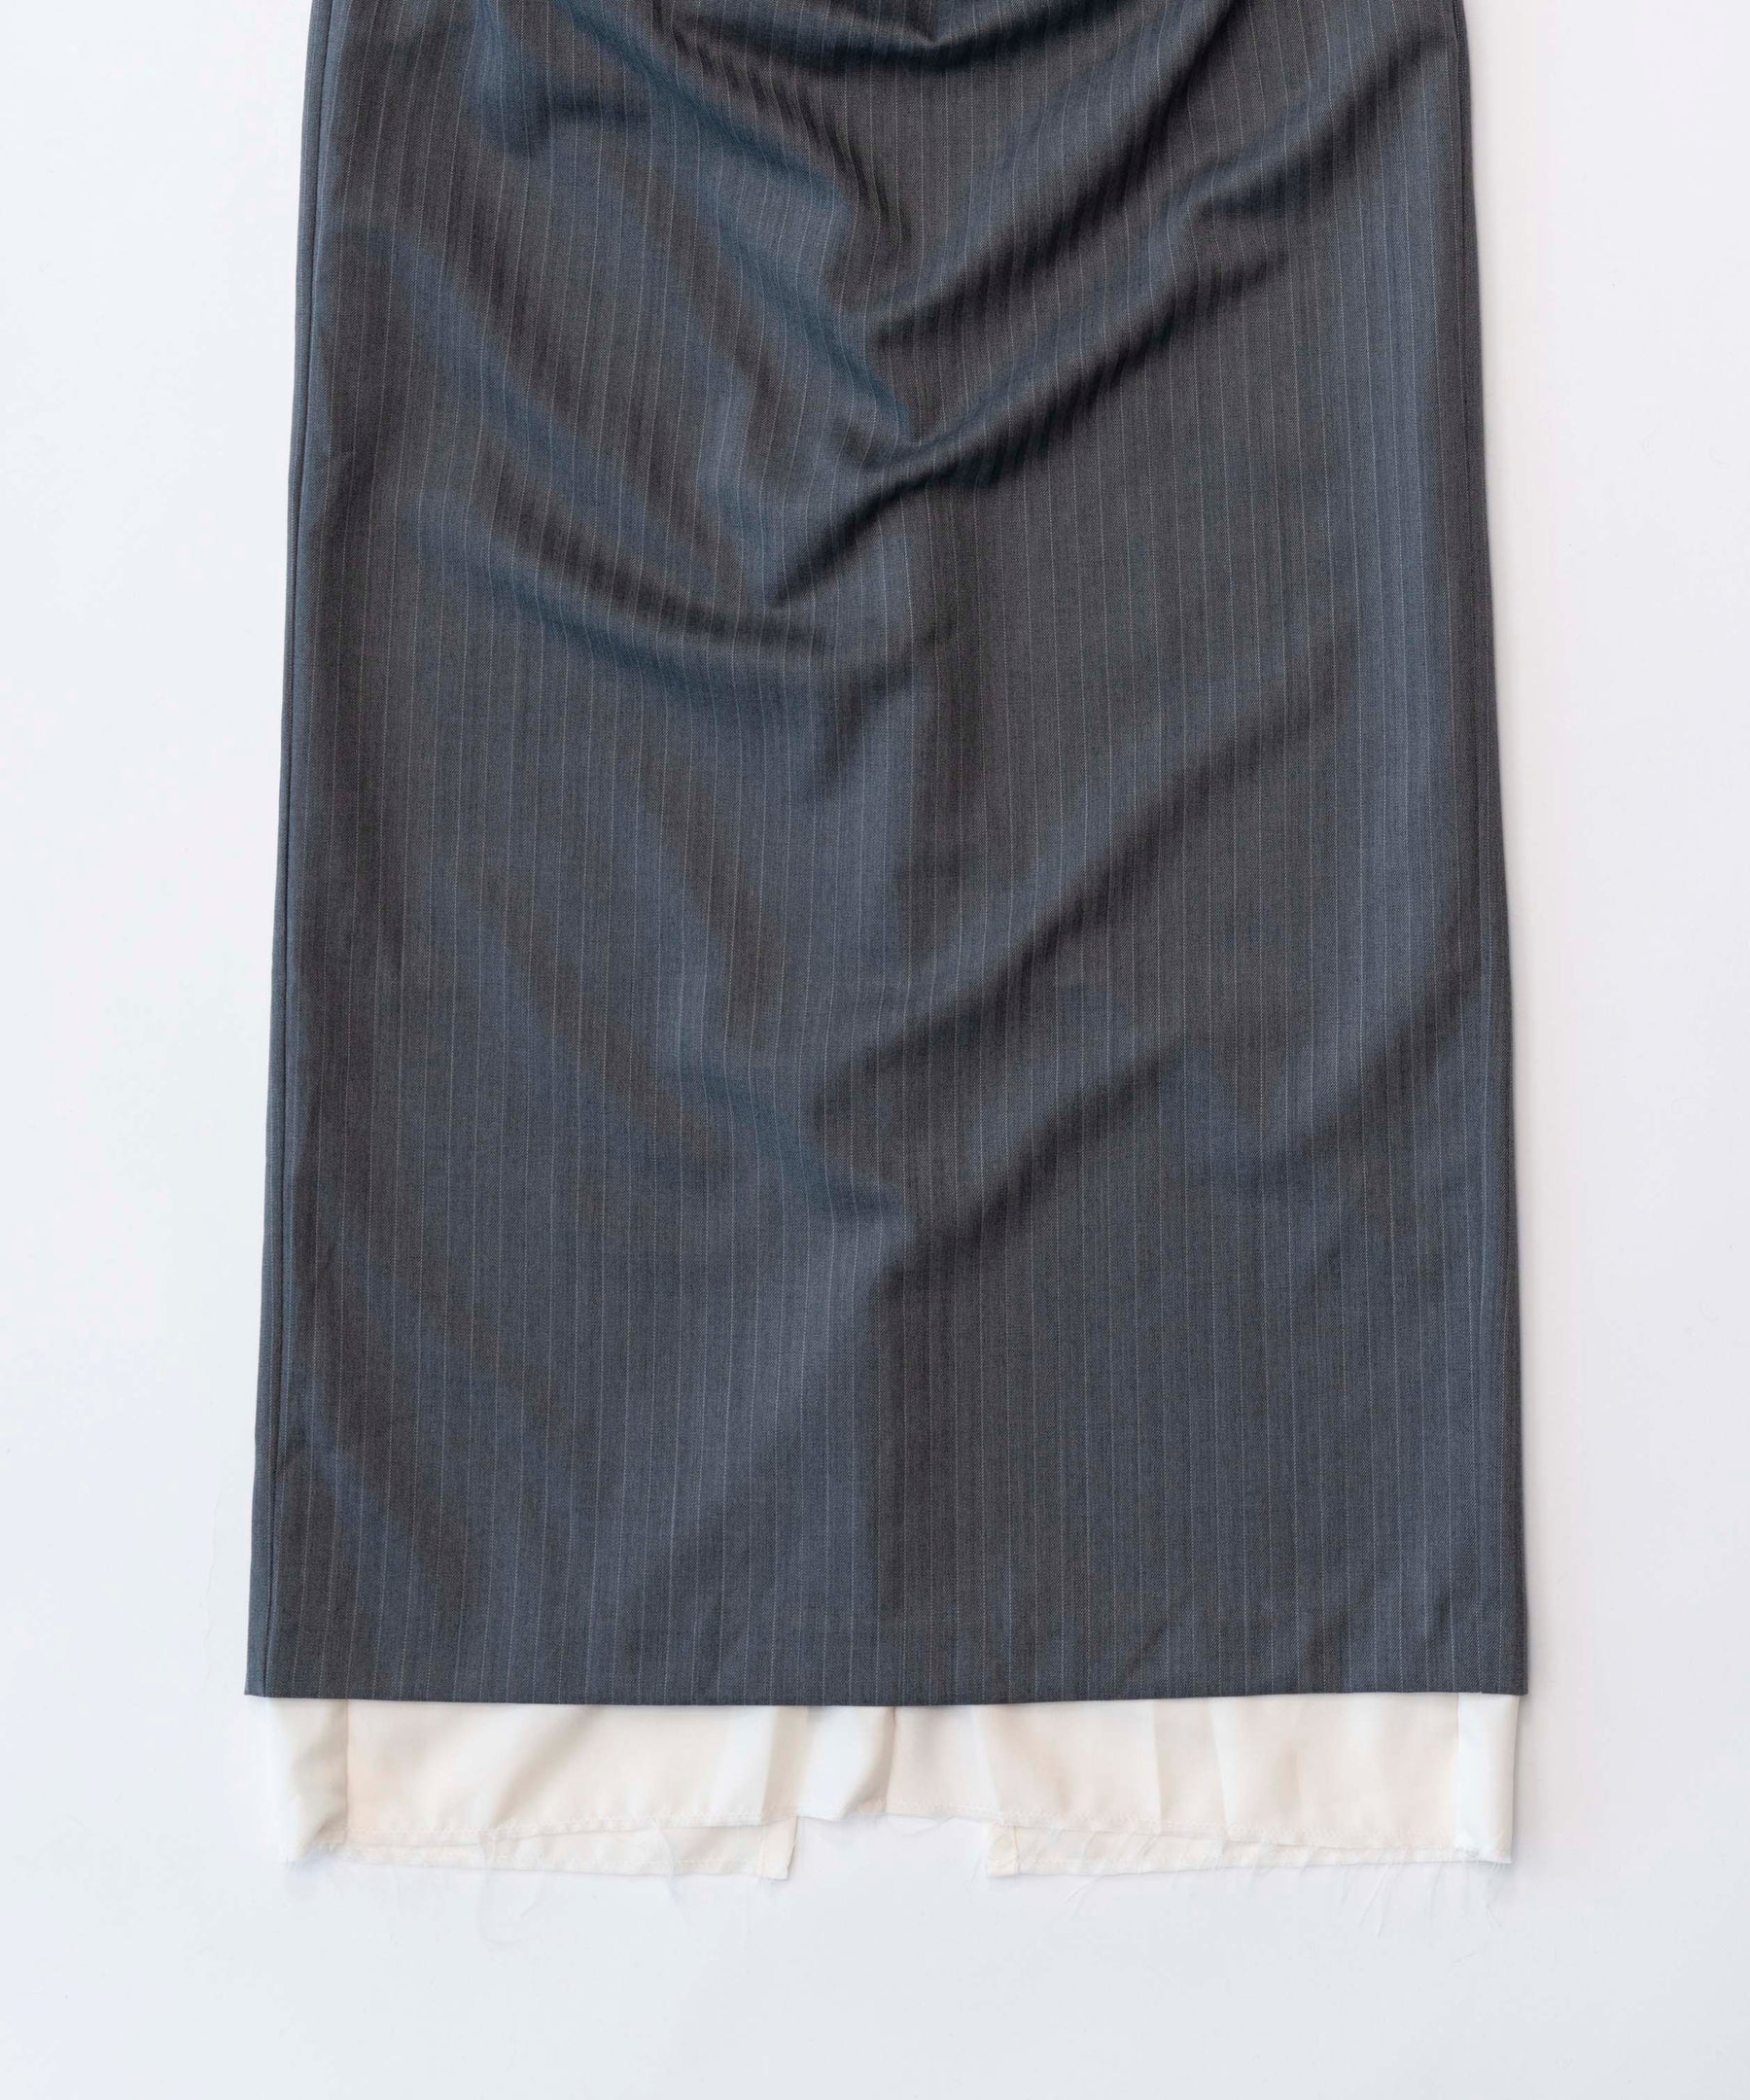 Pinstripe Double Waist Tight Skirt